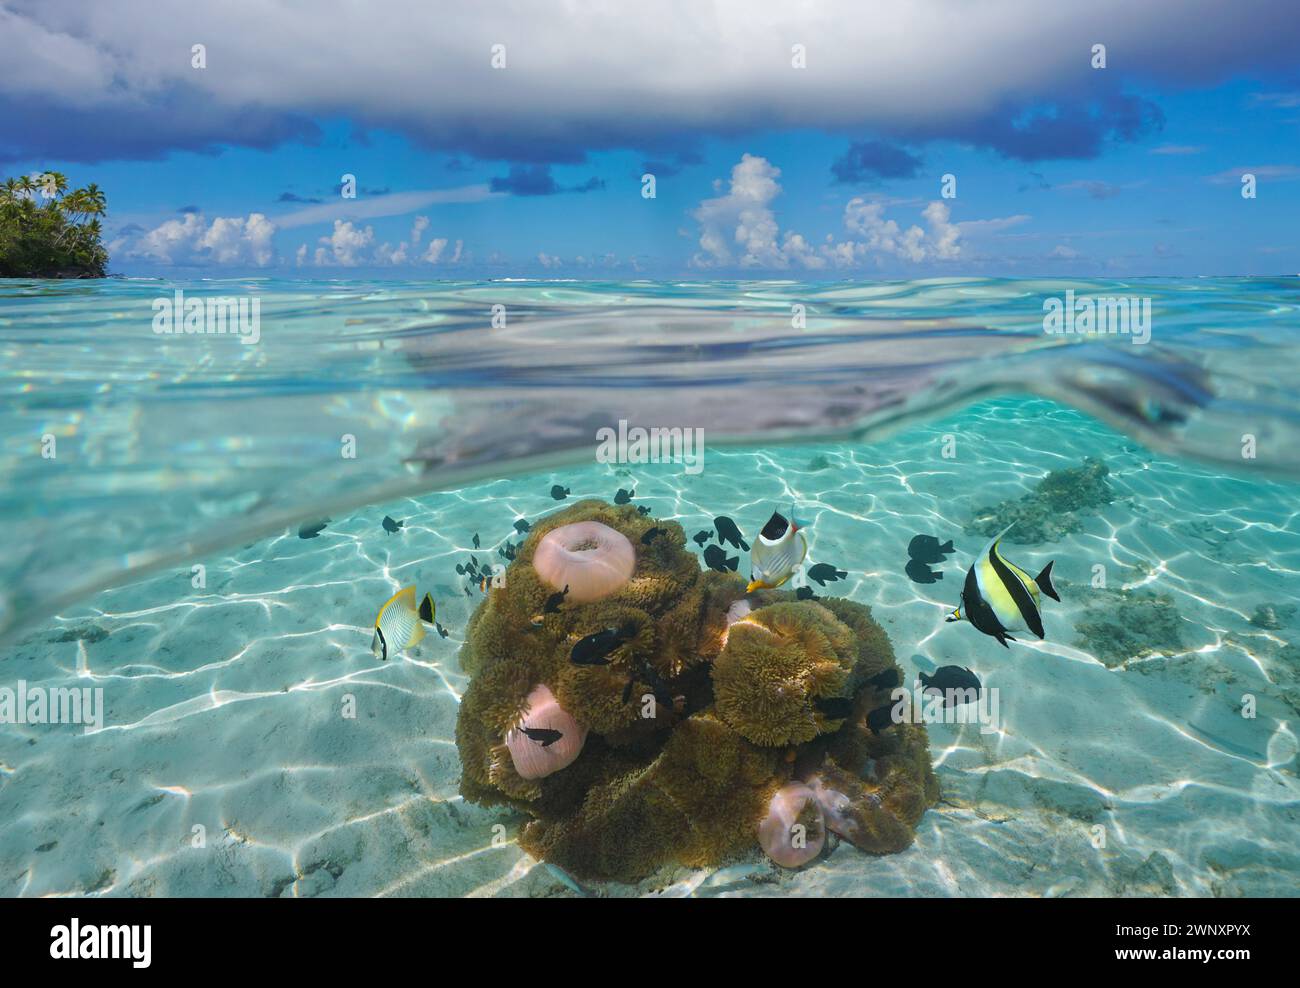 Tropische Meereslandschaft, Fische mit Meeresanemonen unter Wasser in der Lagune von Huahine in Französisch-Polynesien, geteilter Blick über und unter der Wasseroberfläche Stockfoto